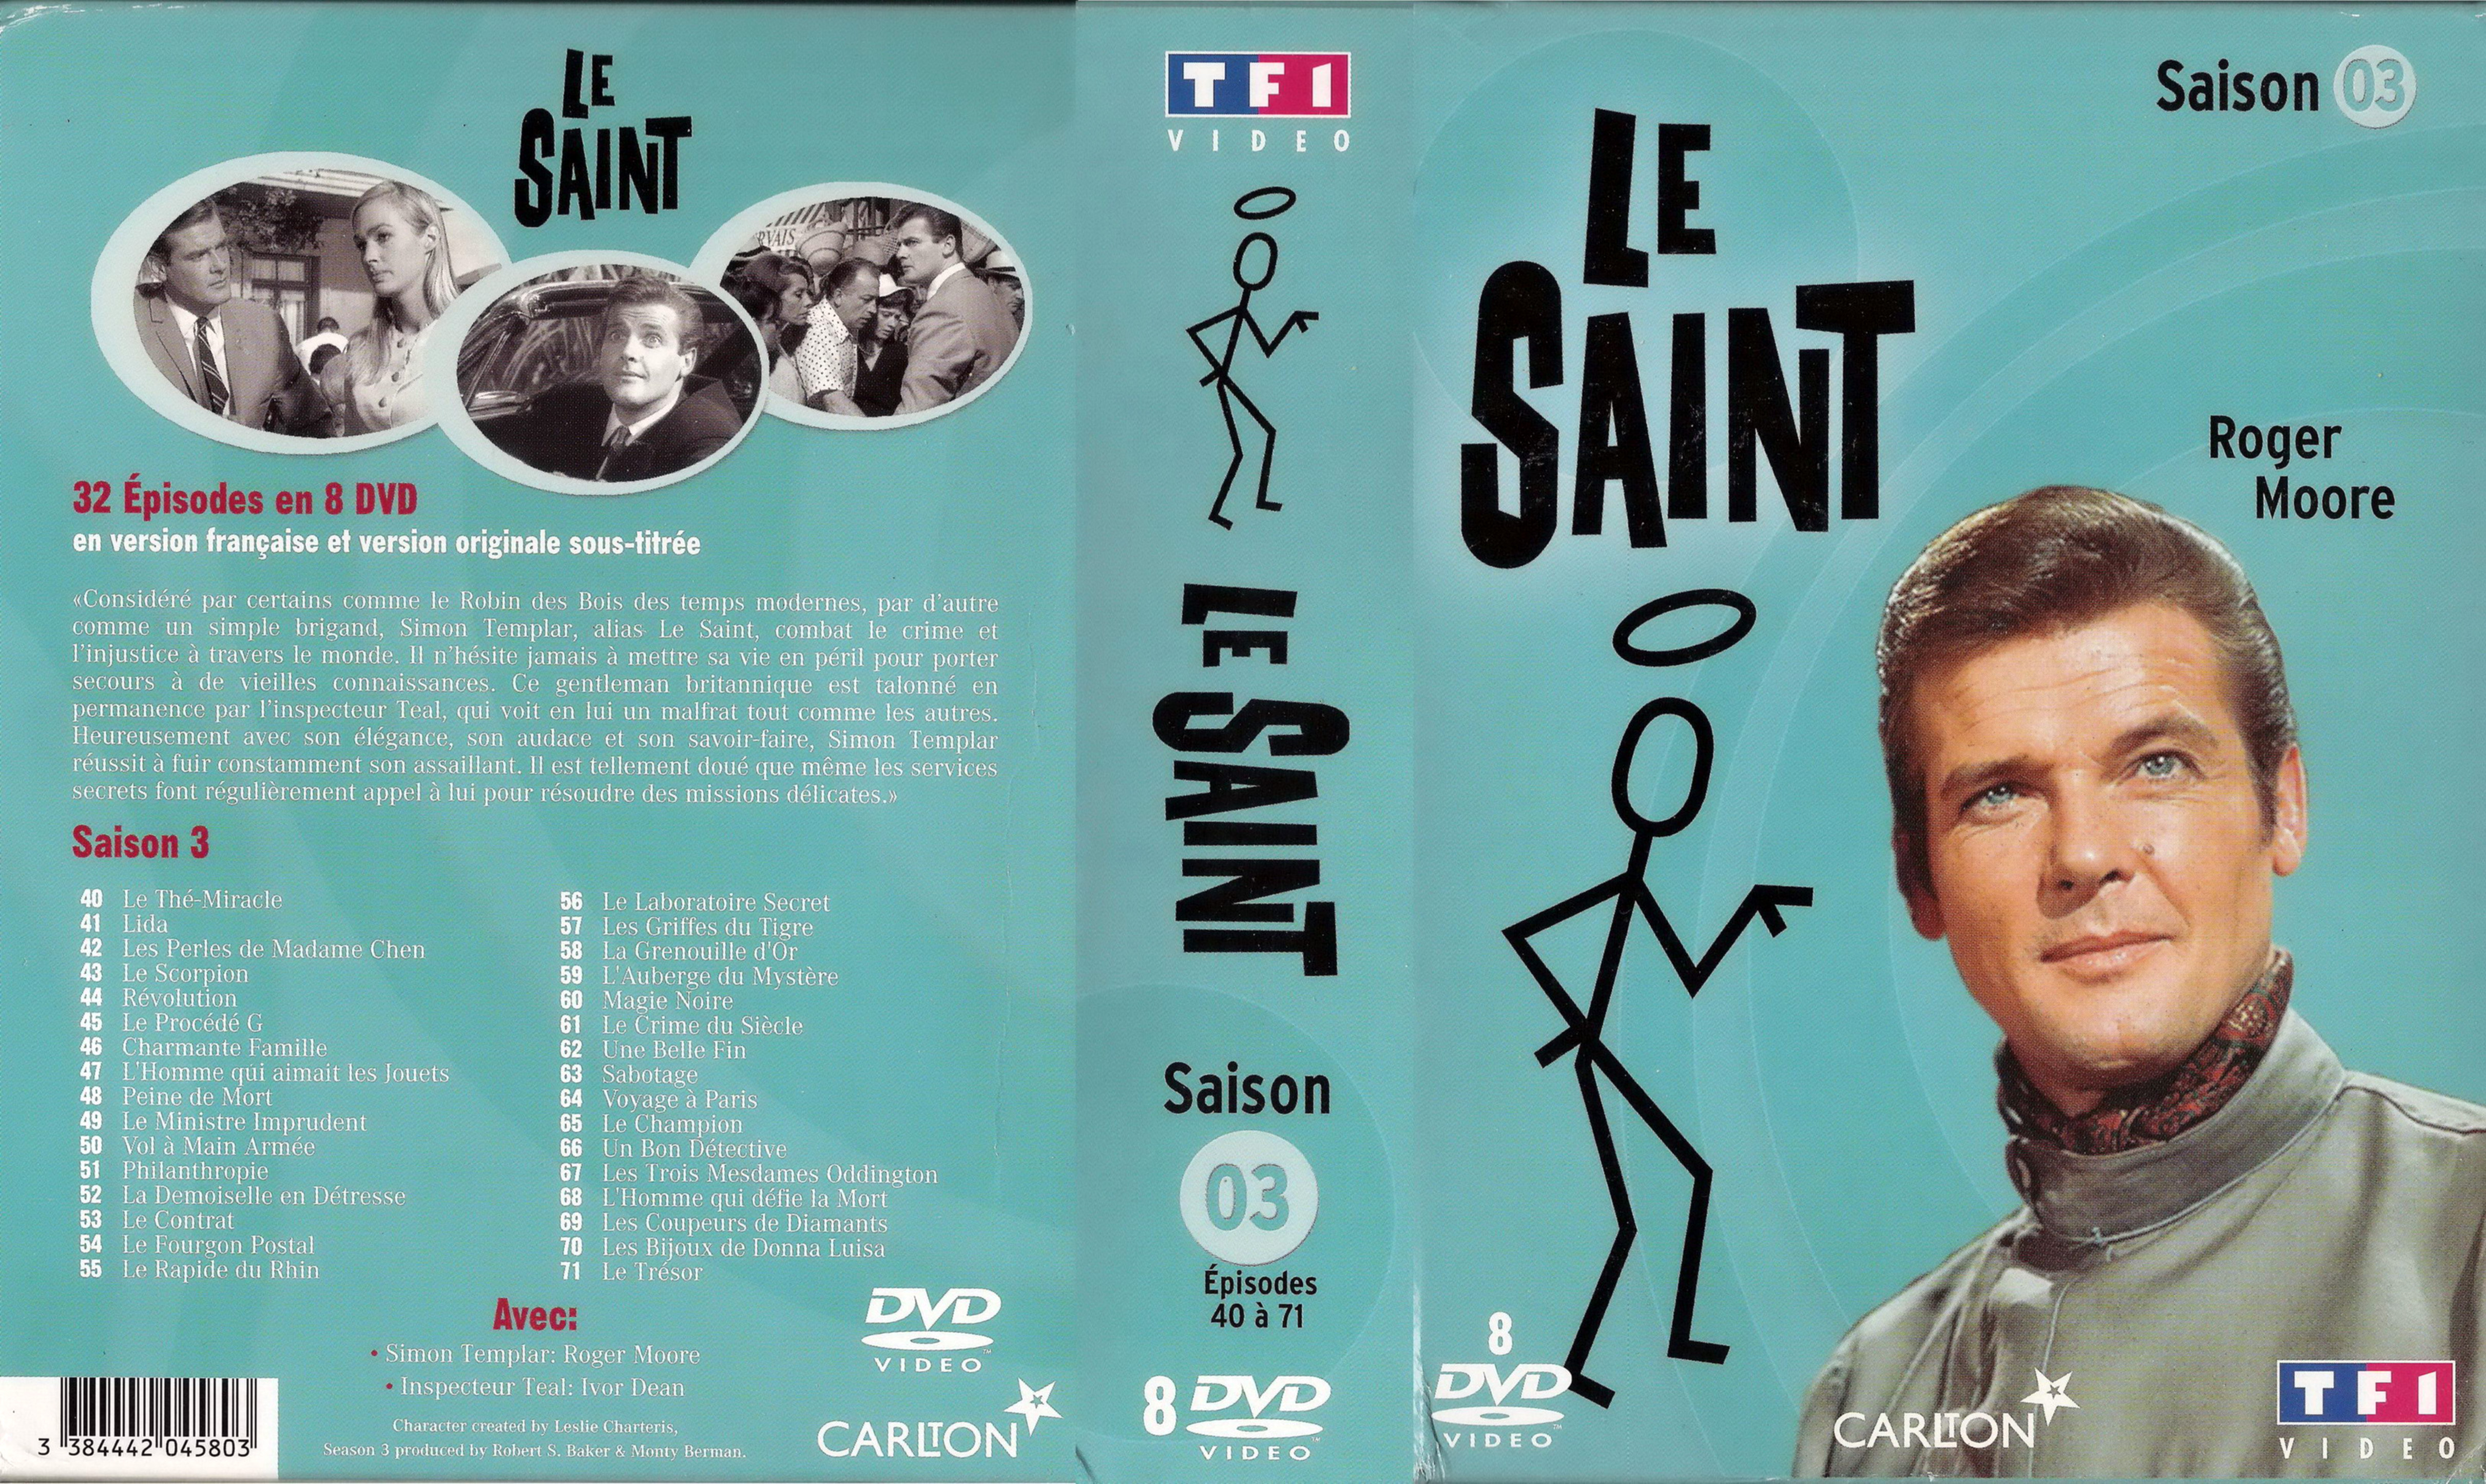 Jaquette DVD Le saint Saison 3 COFFRET